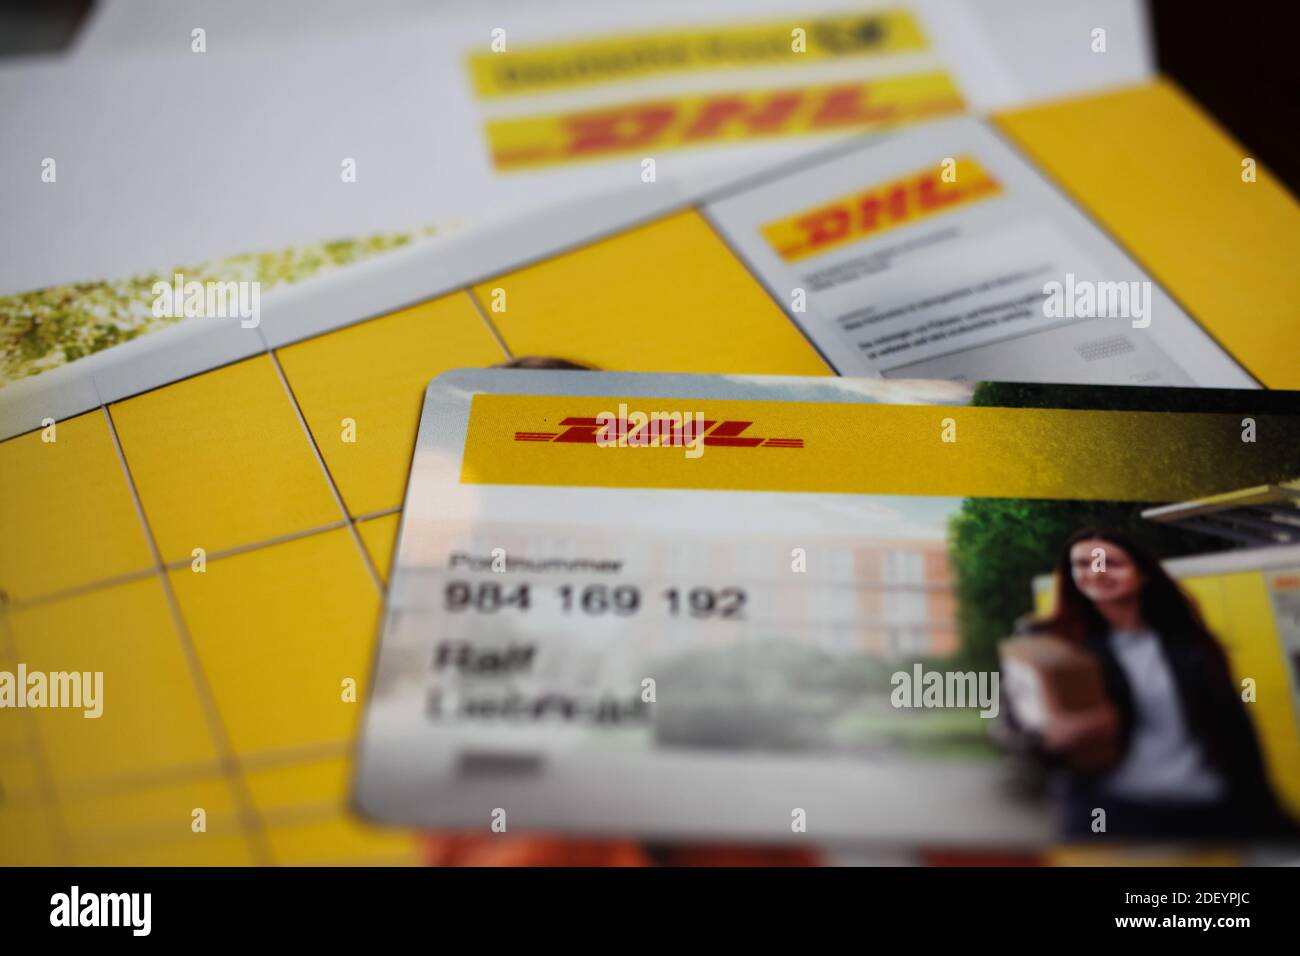 Viersen, Deutschland - 9. Mai. 2020: Nahaufnahme von DHL, Deutsche Post  Korrespondenz und Karte für die Beantragung von Paketen bei packstation  Stockfotografie - Alamy